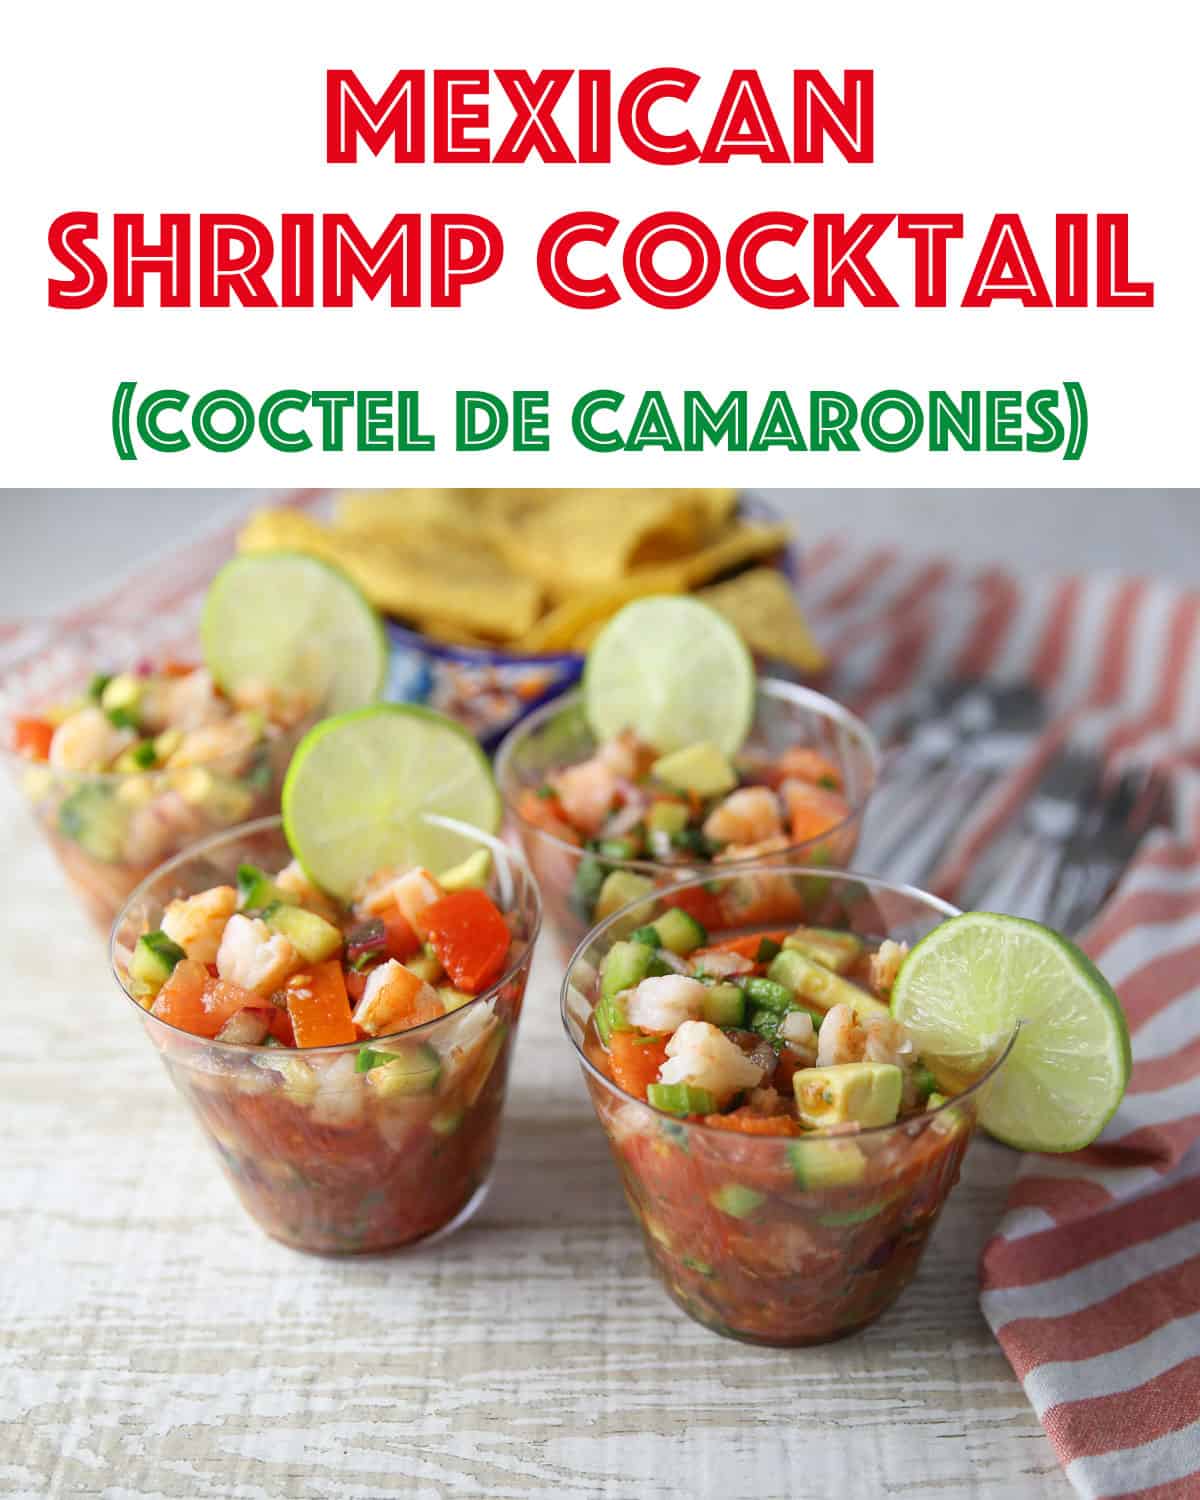 Mexican shrimp cocktail (coctel de camarones)